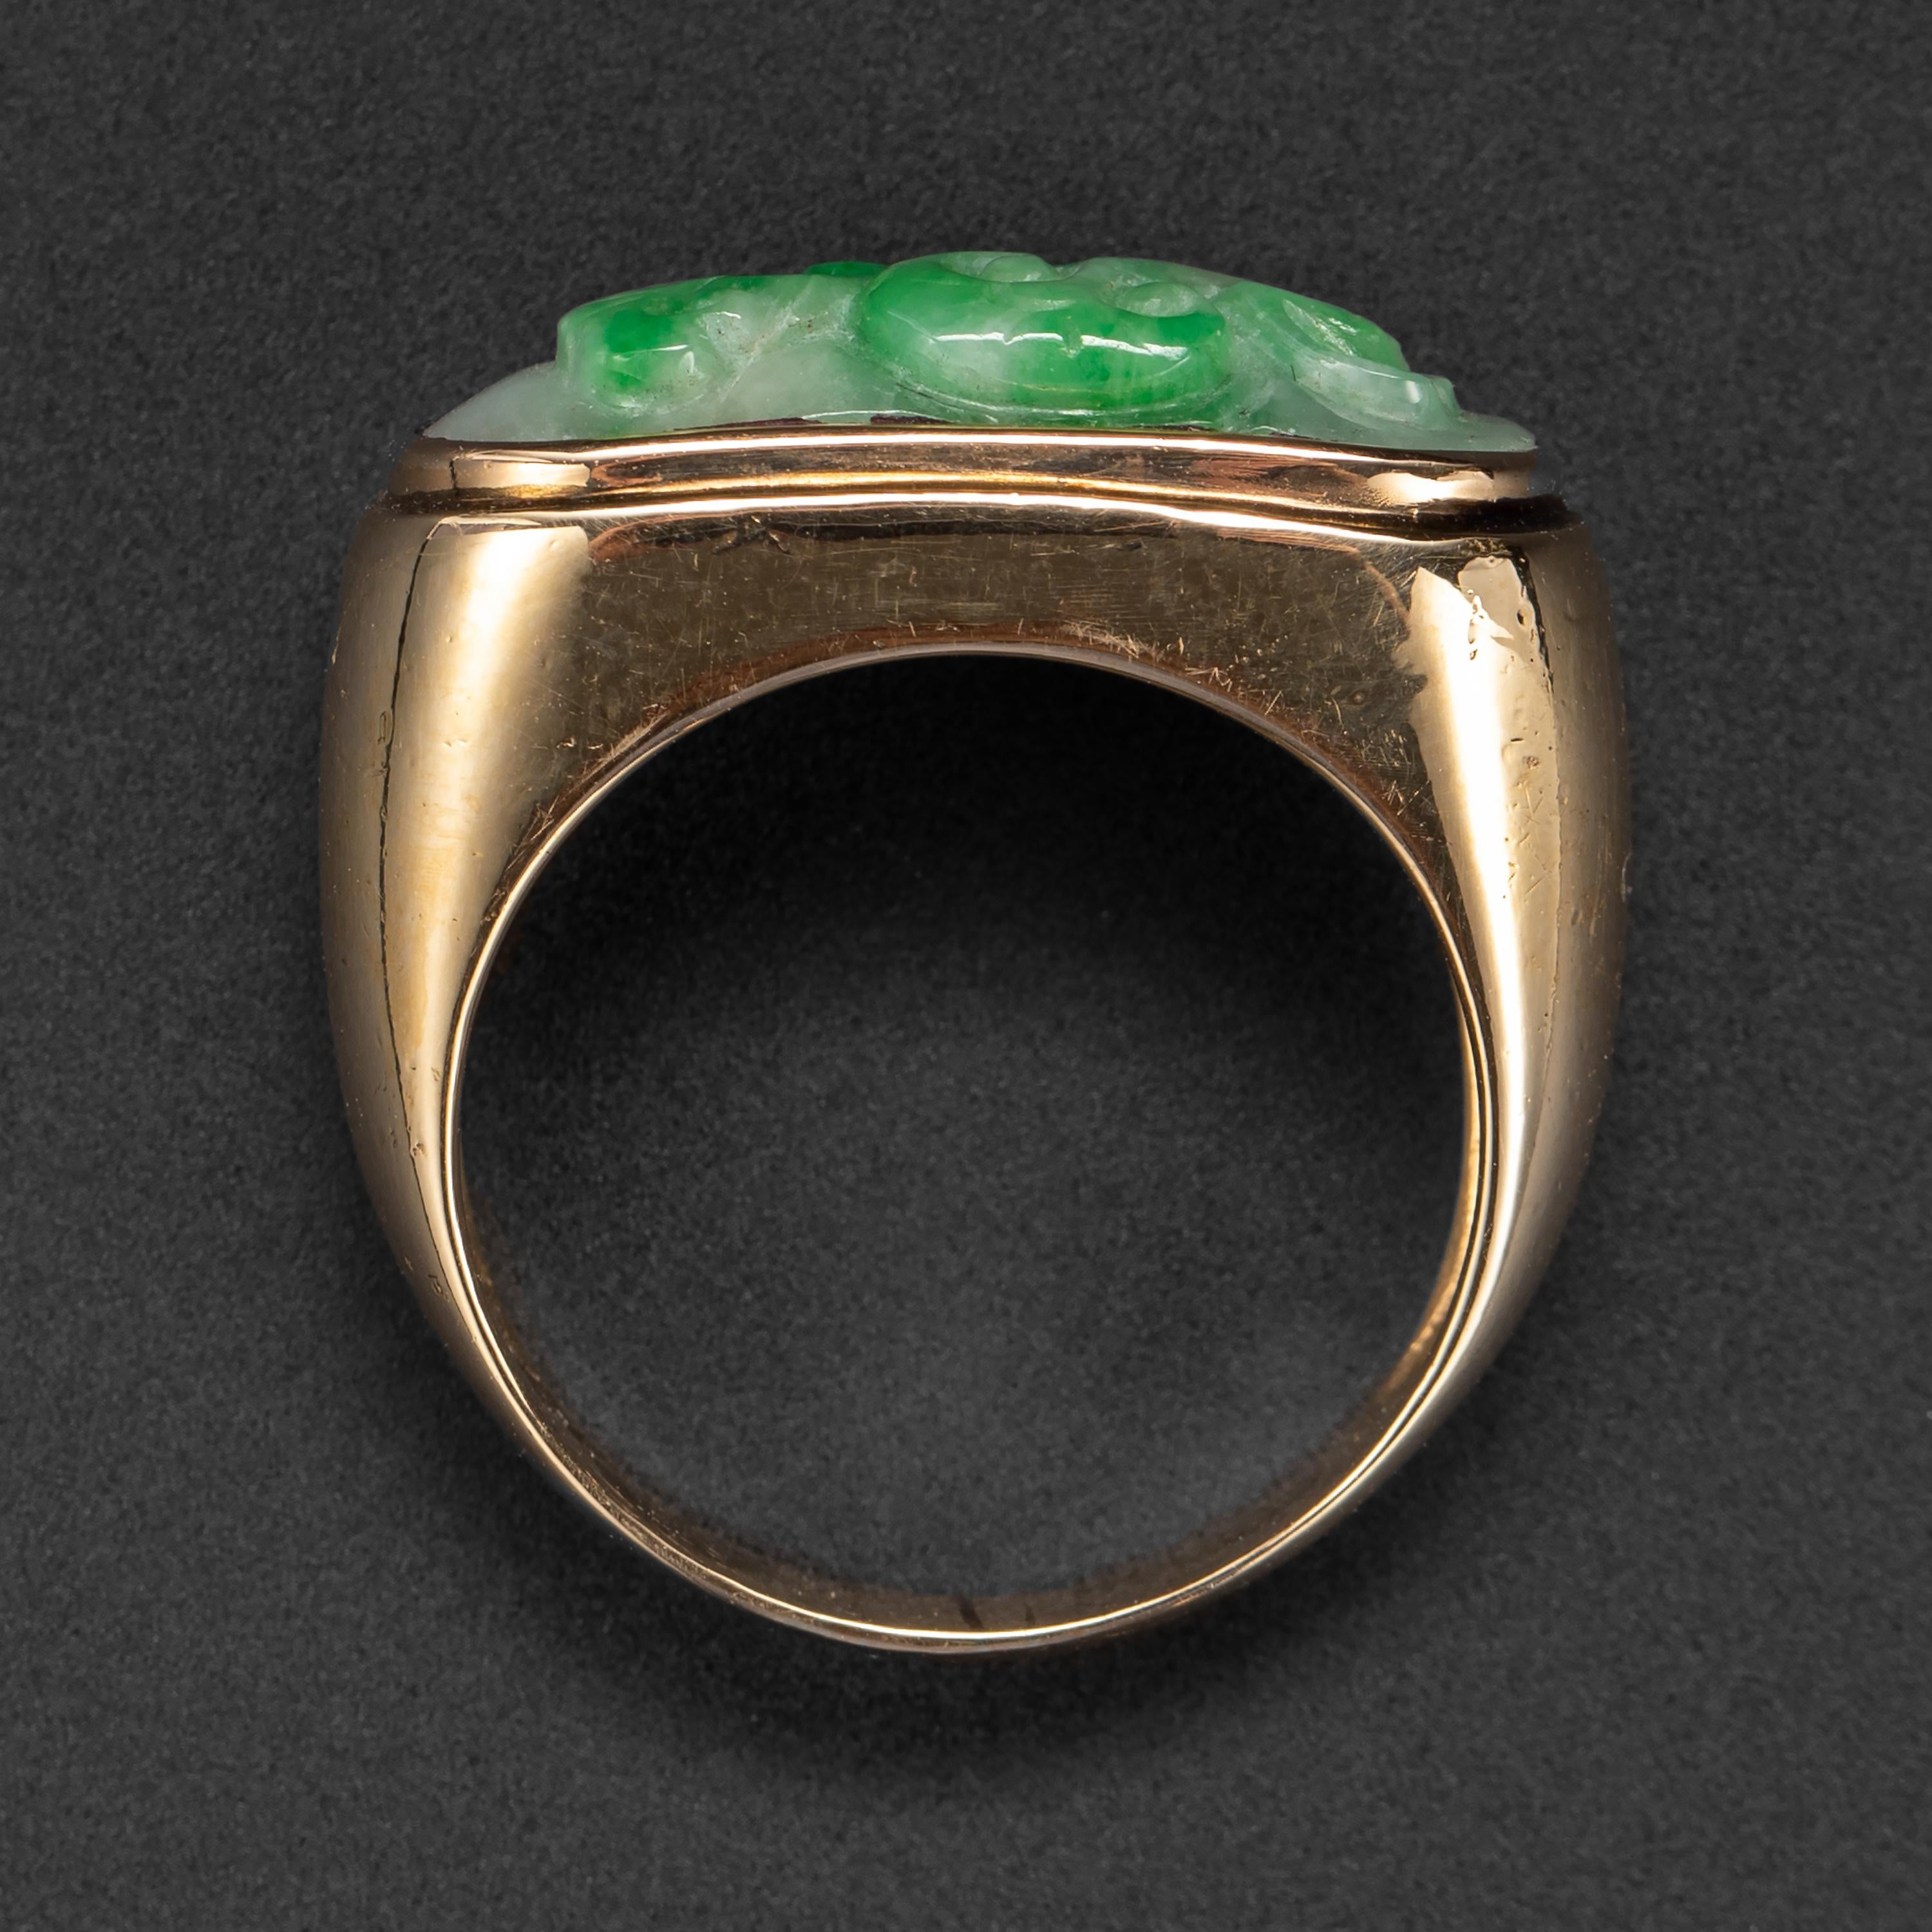 jade rings meaning